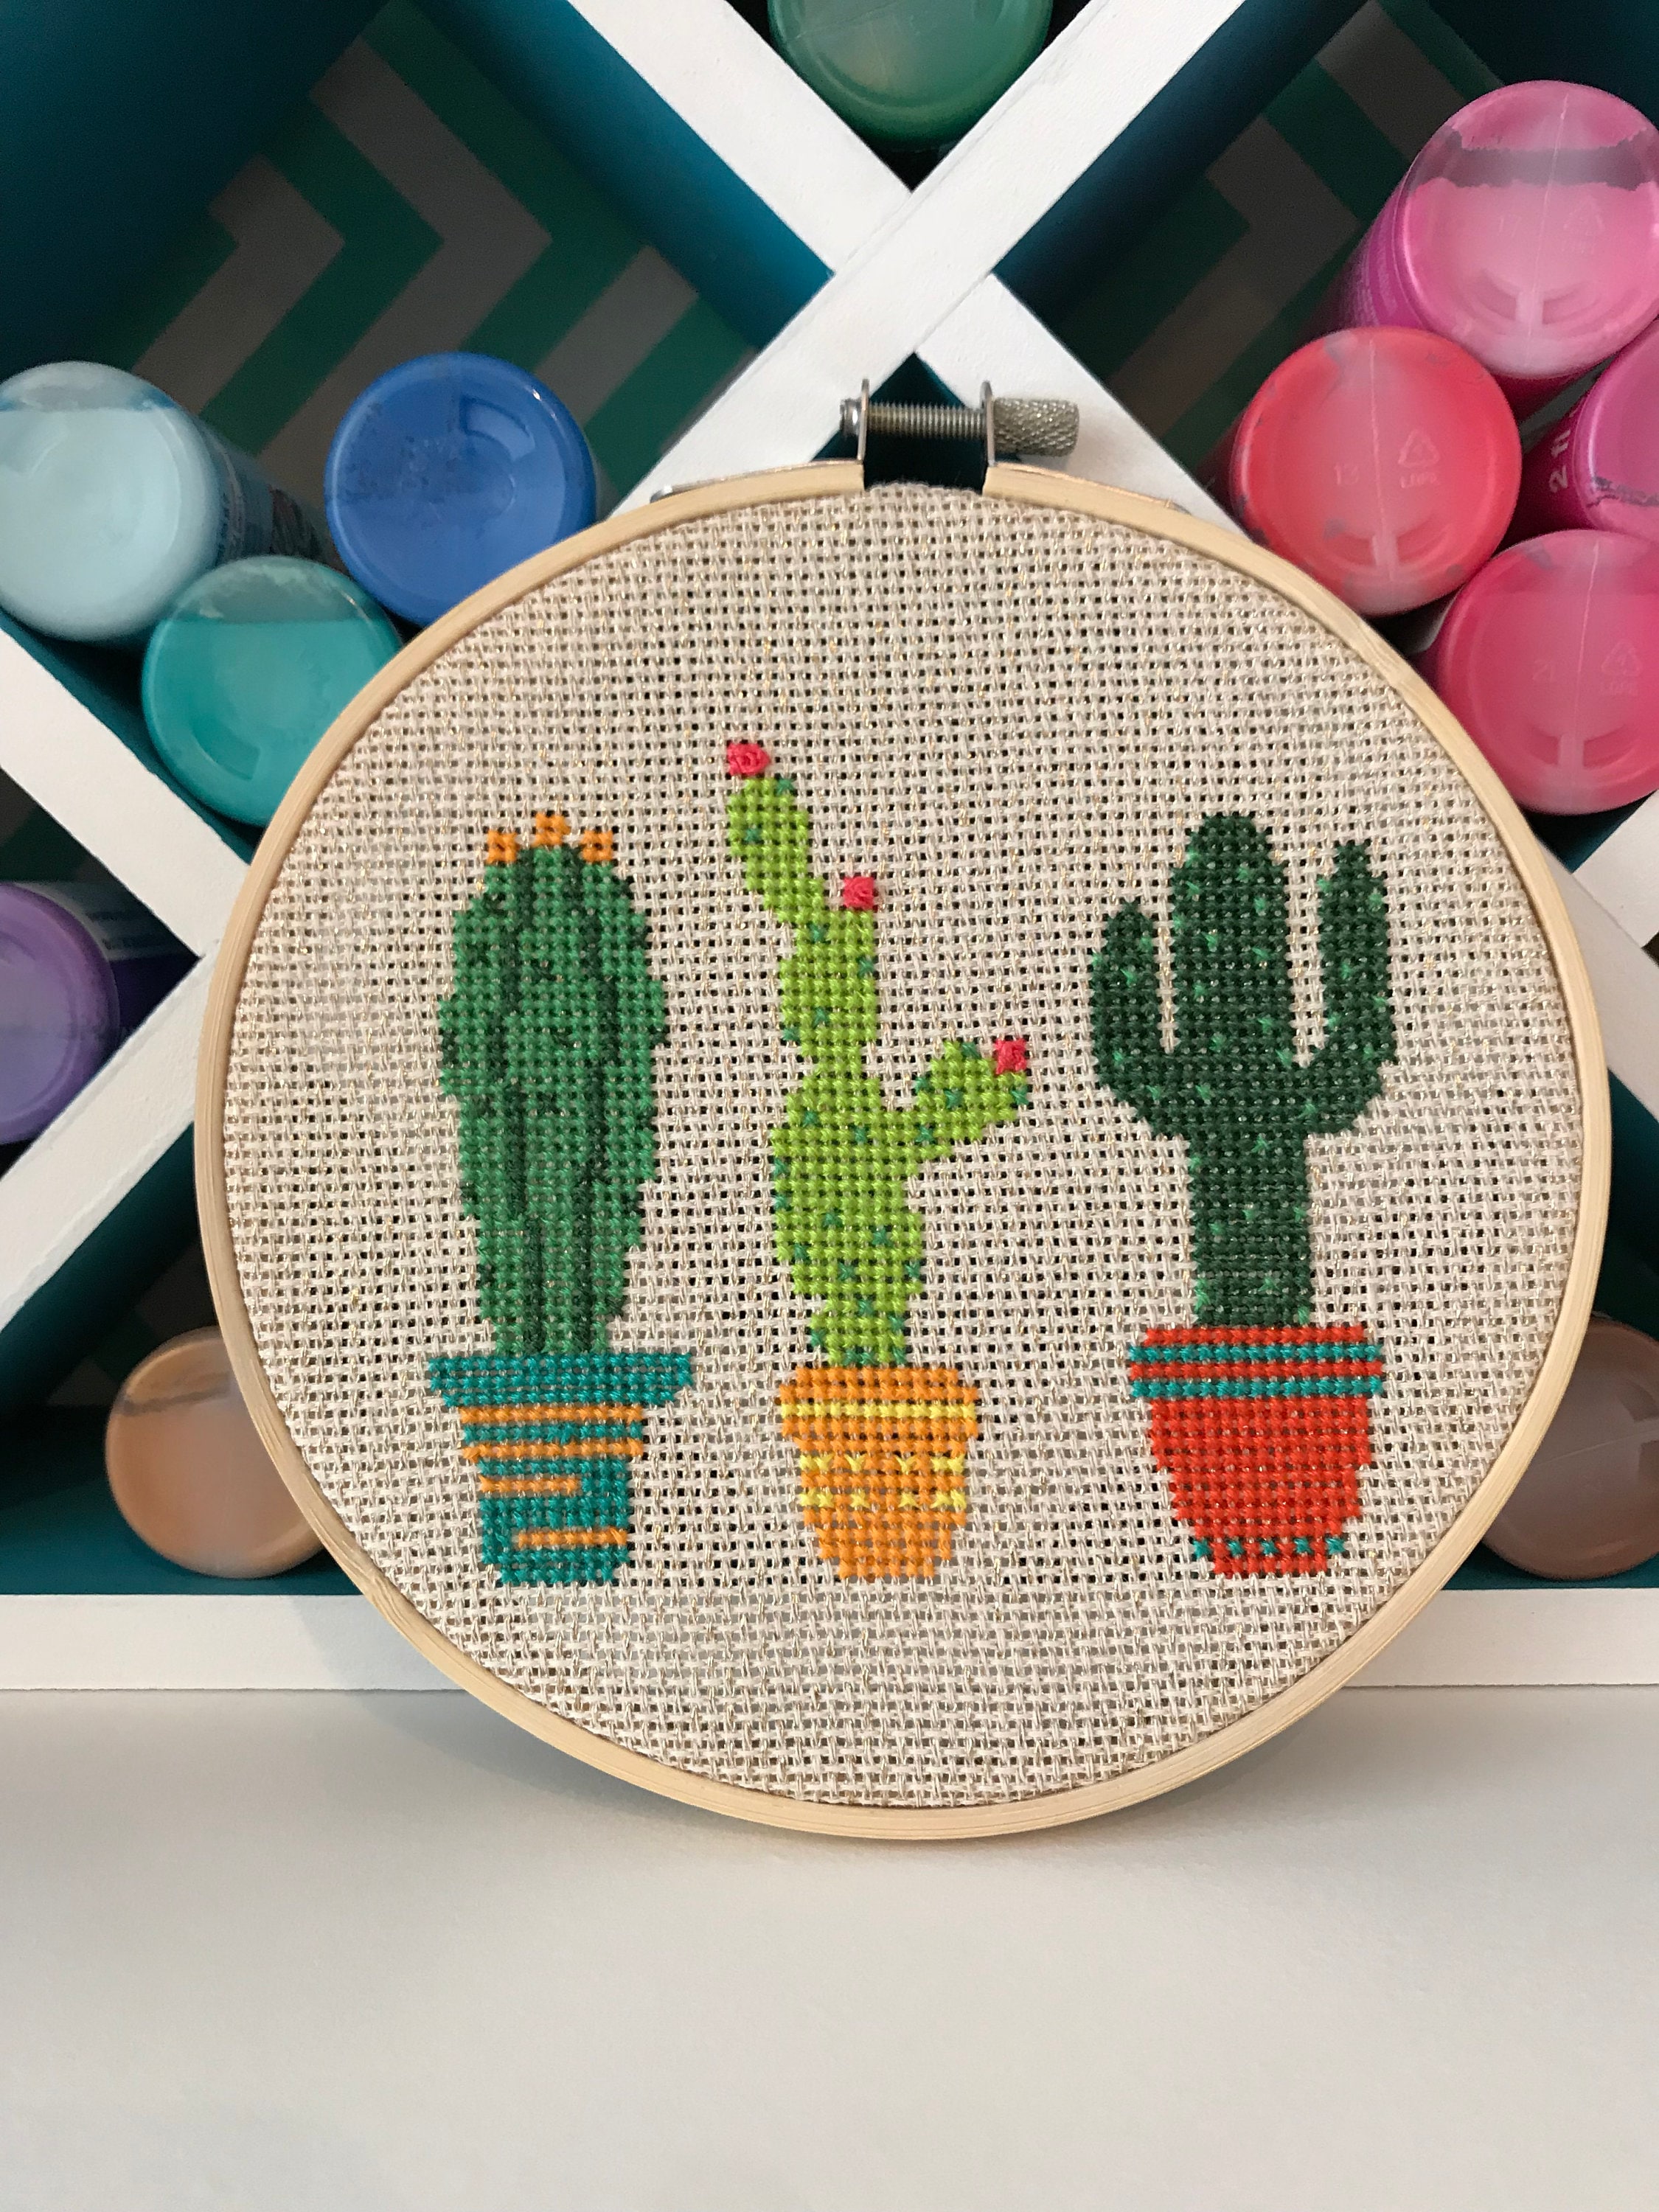 Cacti & Succulent Miniatures Sculpting Kit | Arts, Crafts & DIY Kits, Kids Craft & Crafter Gifts